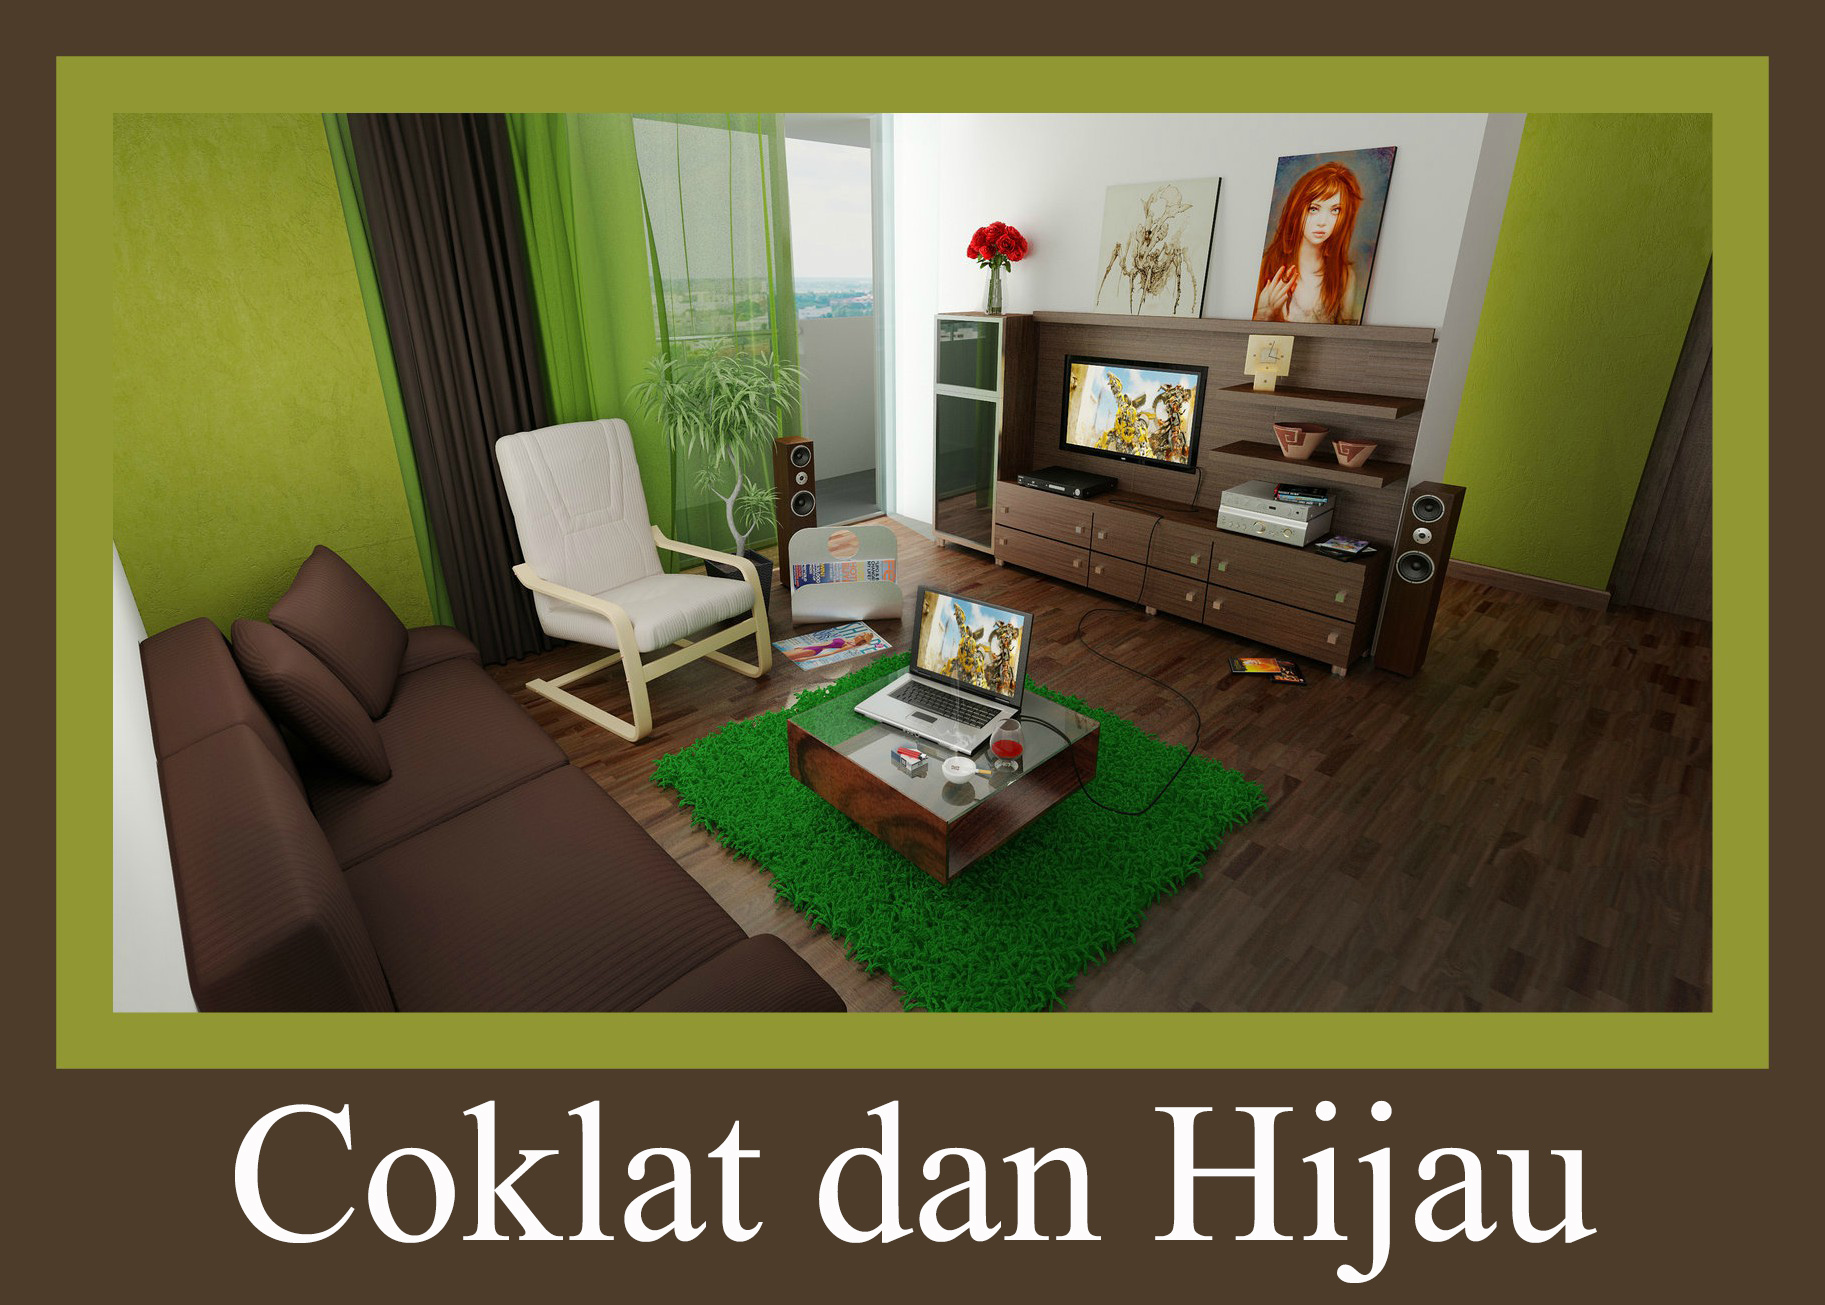 壁紙warna coklat,リビングルーム,ルーム,家具,緑,インテリア・デザイン